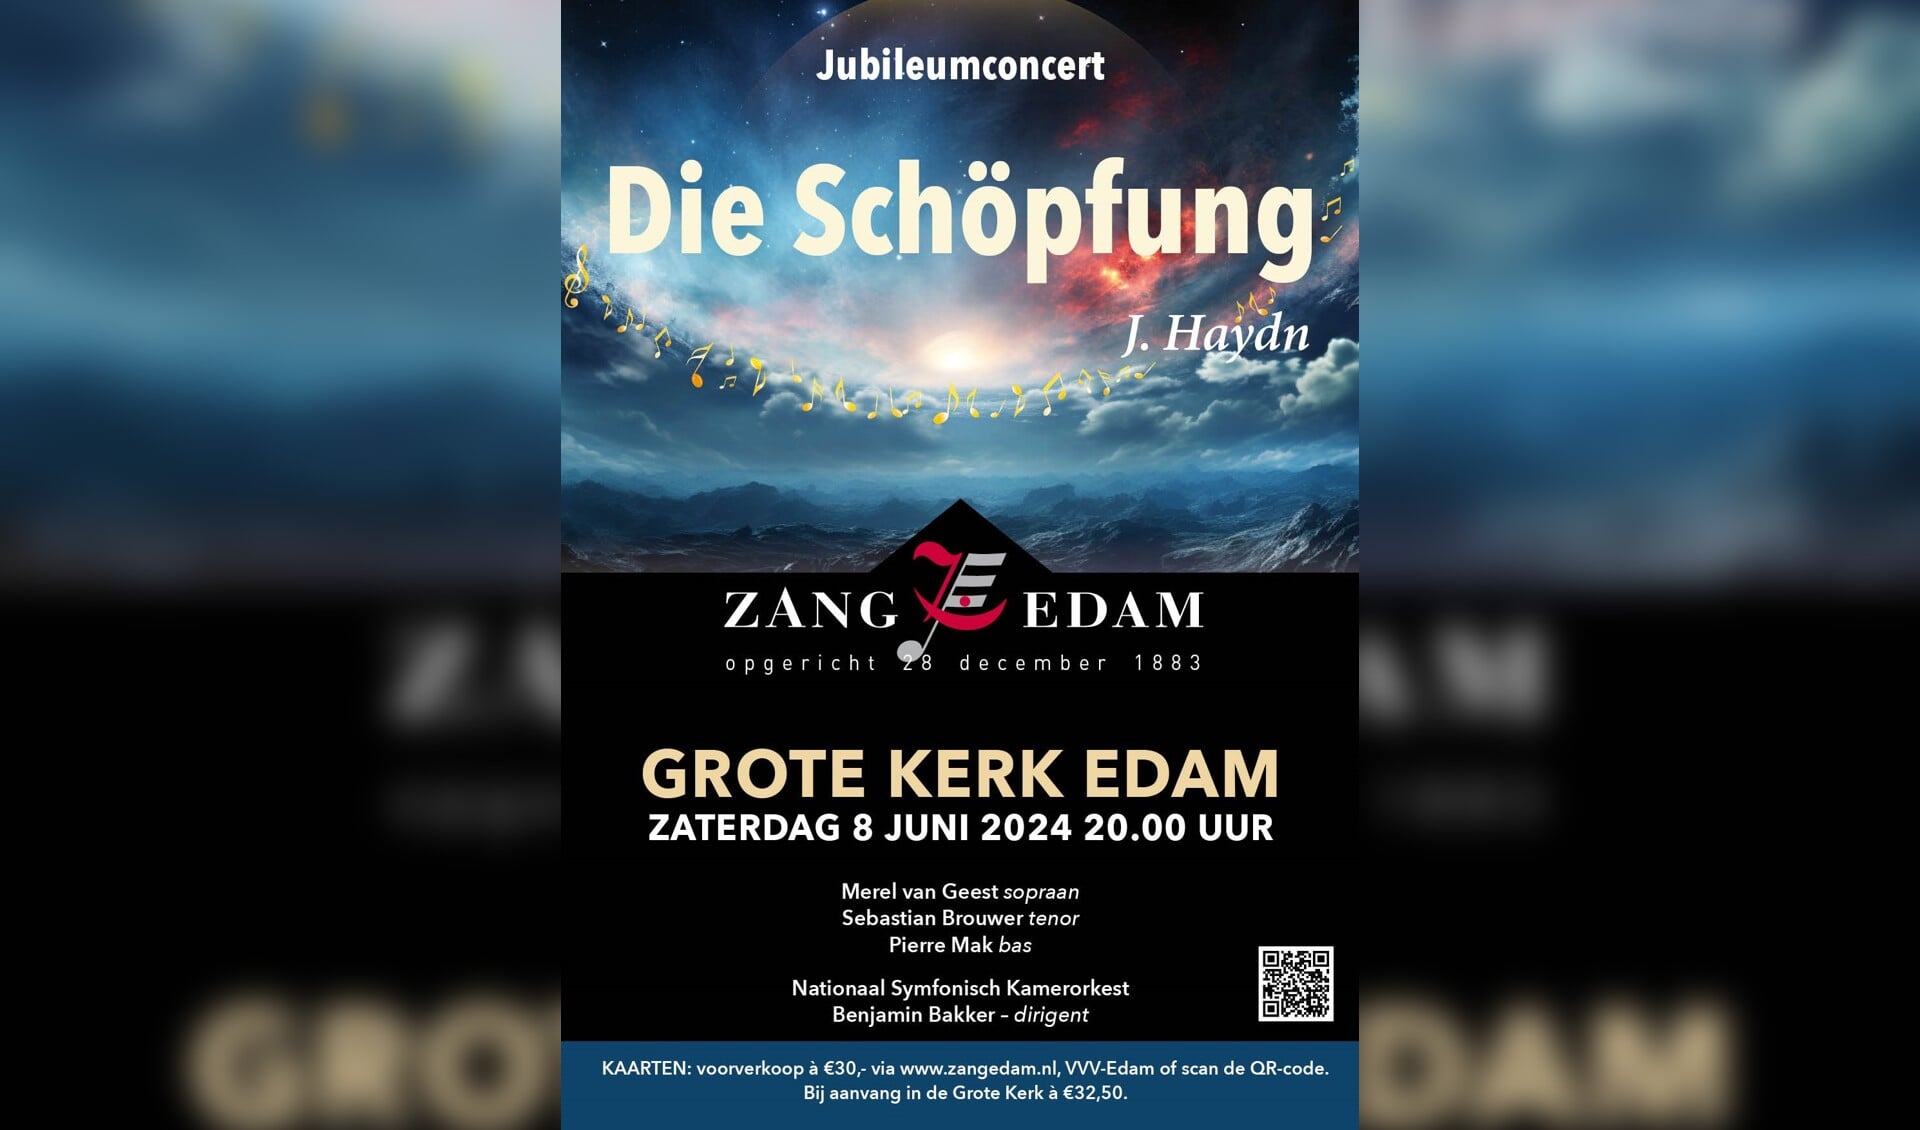 Muziekliefhebbers zijn zaterdagavond 8 juni van harte welkom in de Grote Kerk van Edam om het jubileumconcert van Zang Edam bij te wonen. 